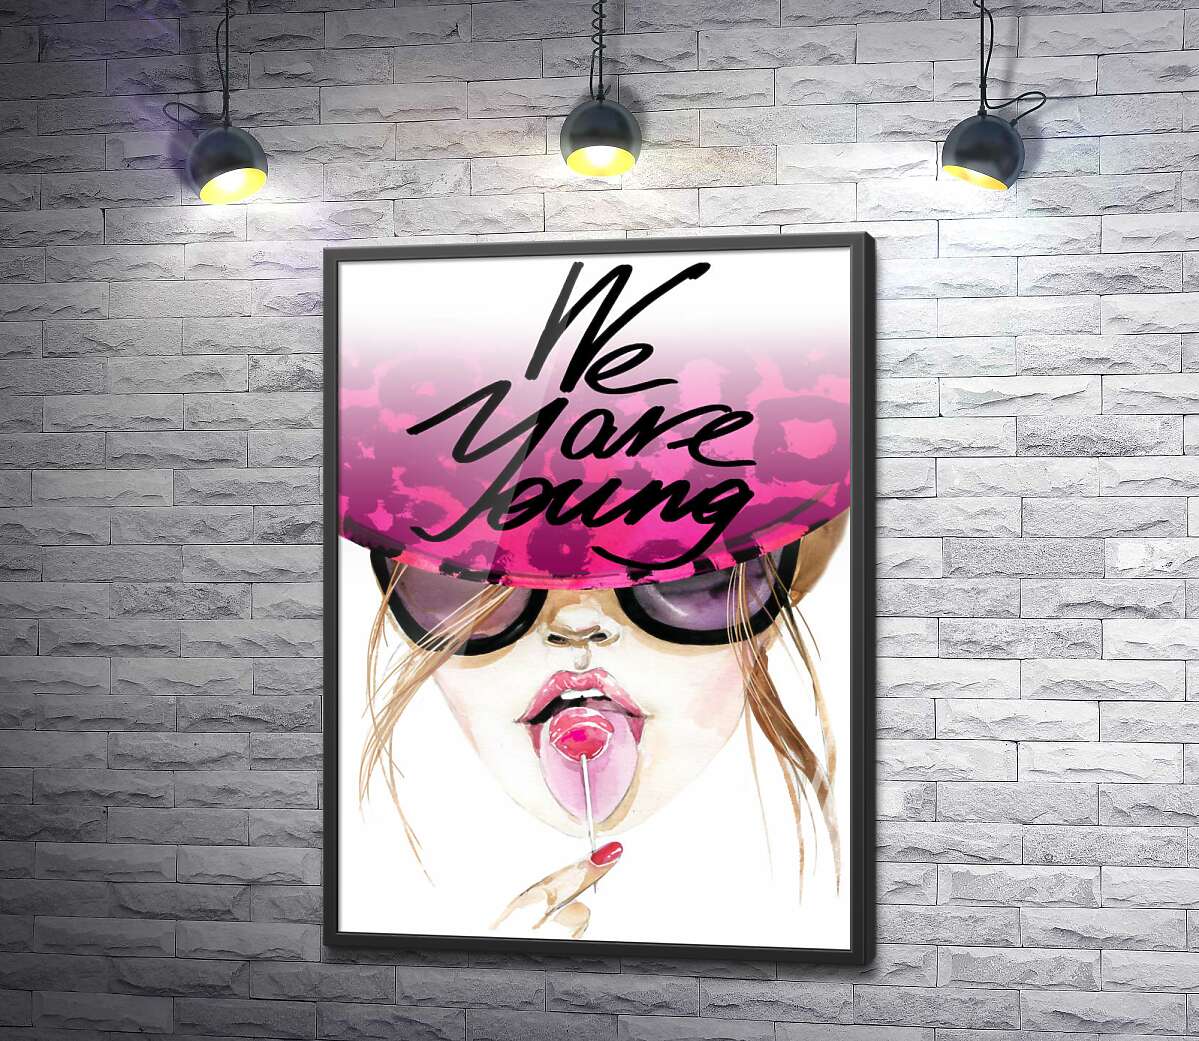 постер Дівчина з льодяником в рожевій шляпі з написом "we are young"